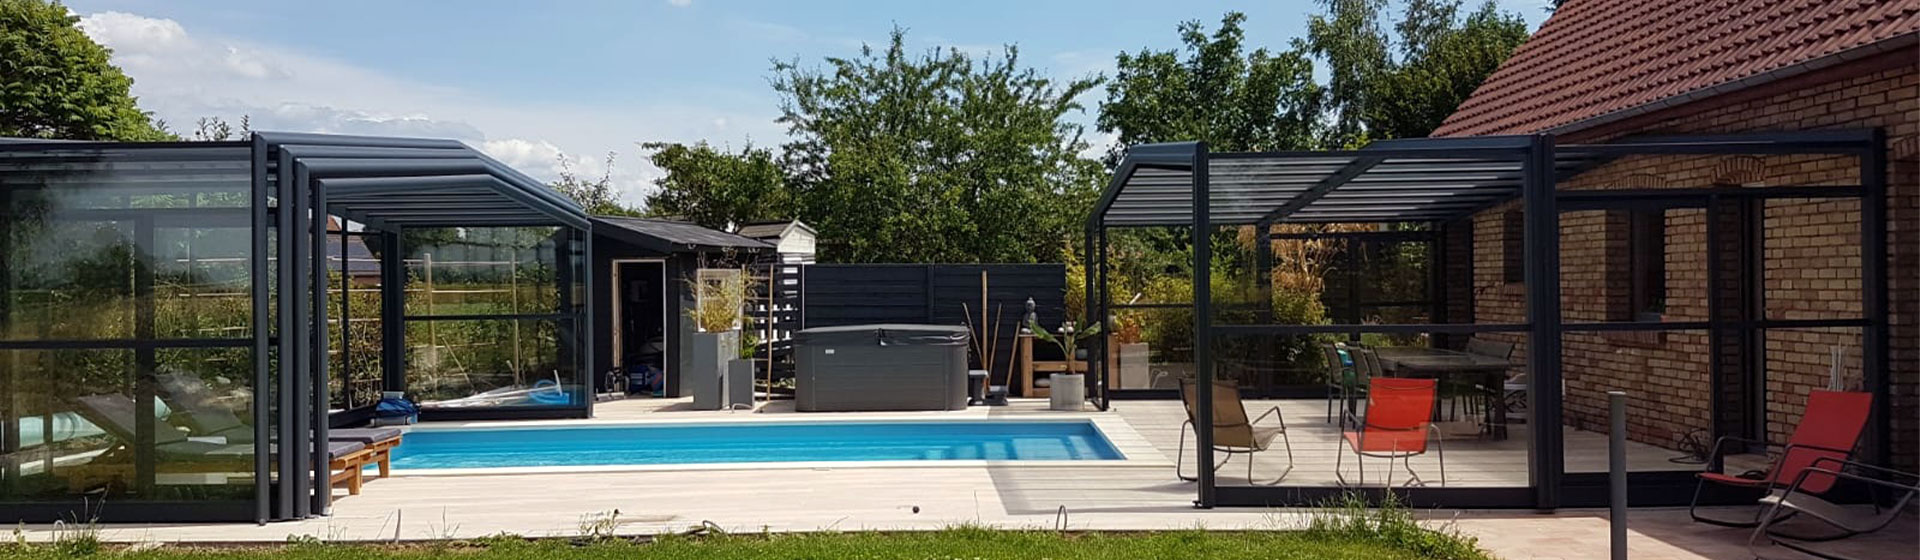 Vue panoramique d'une piscine avec un abri de piscine